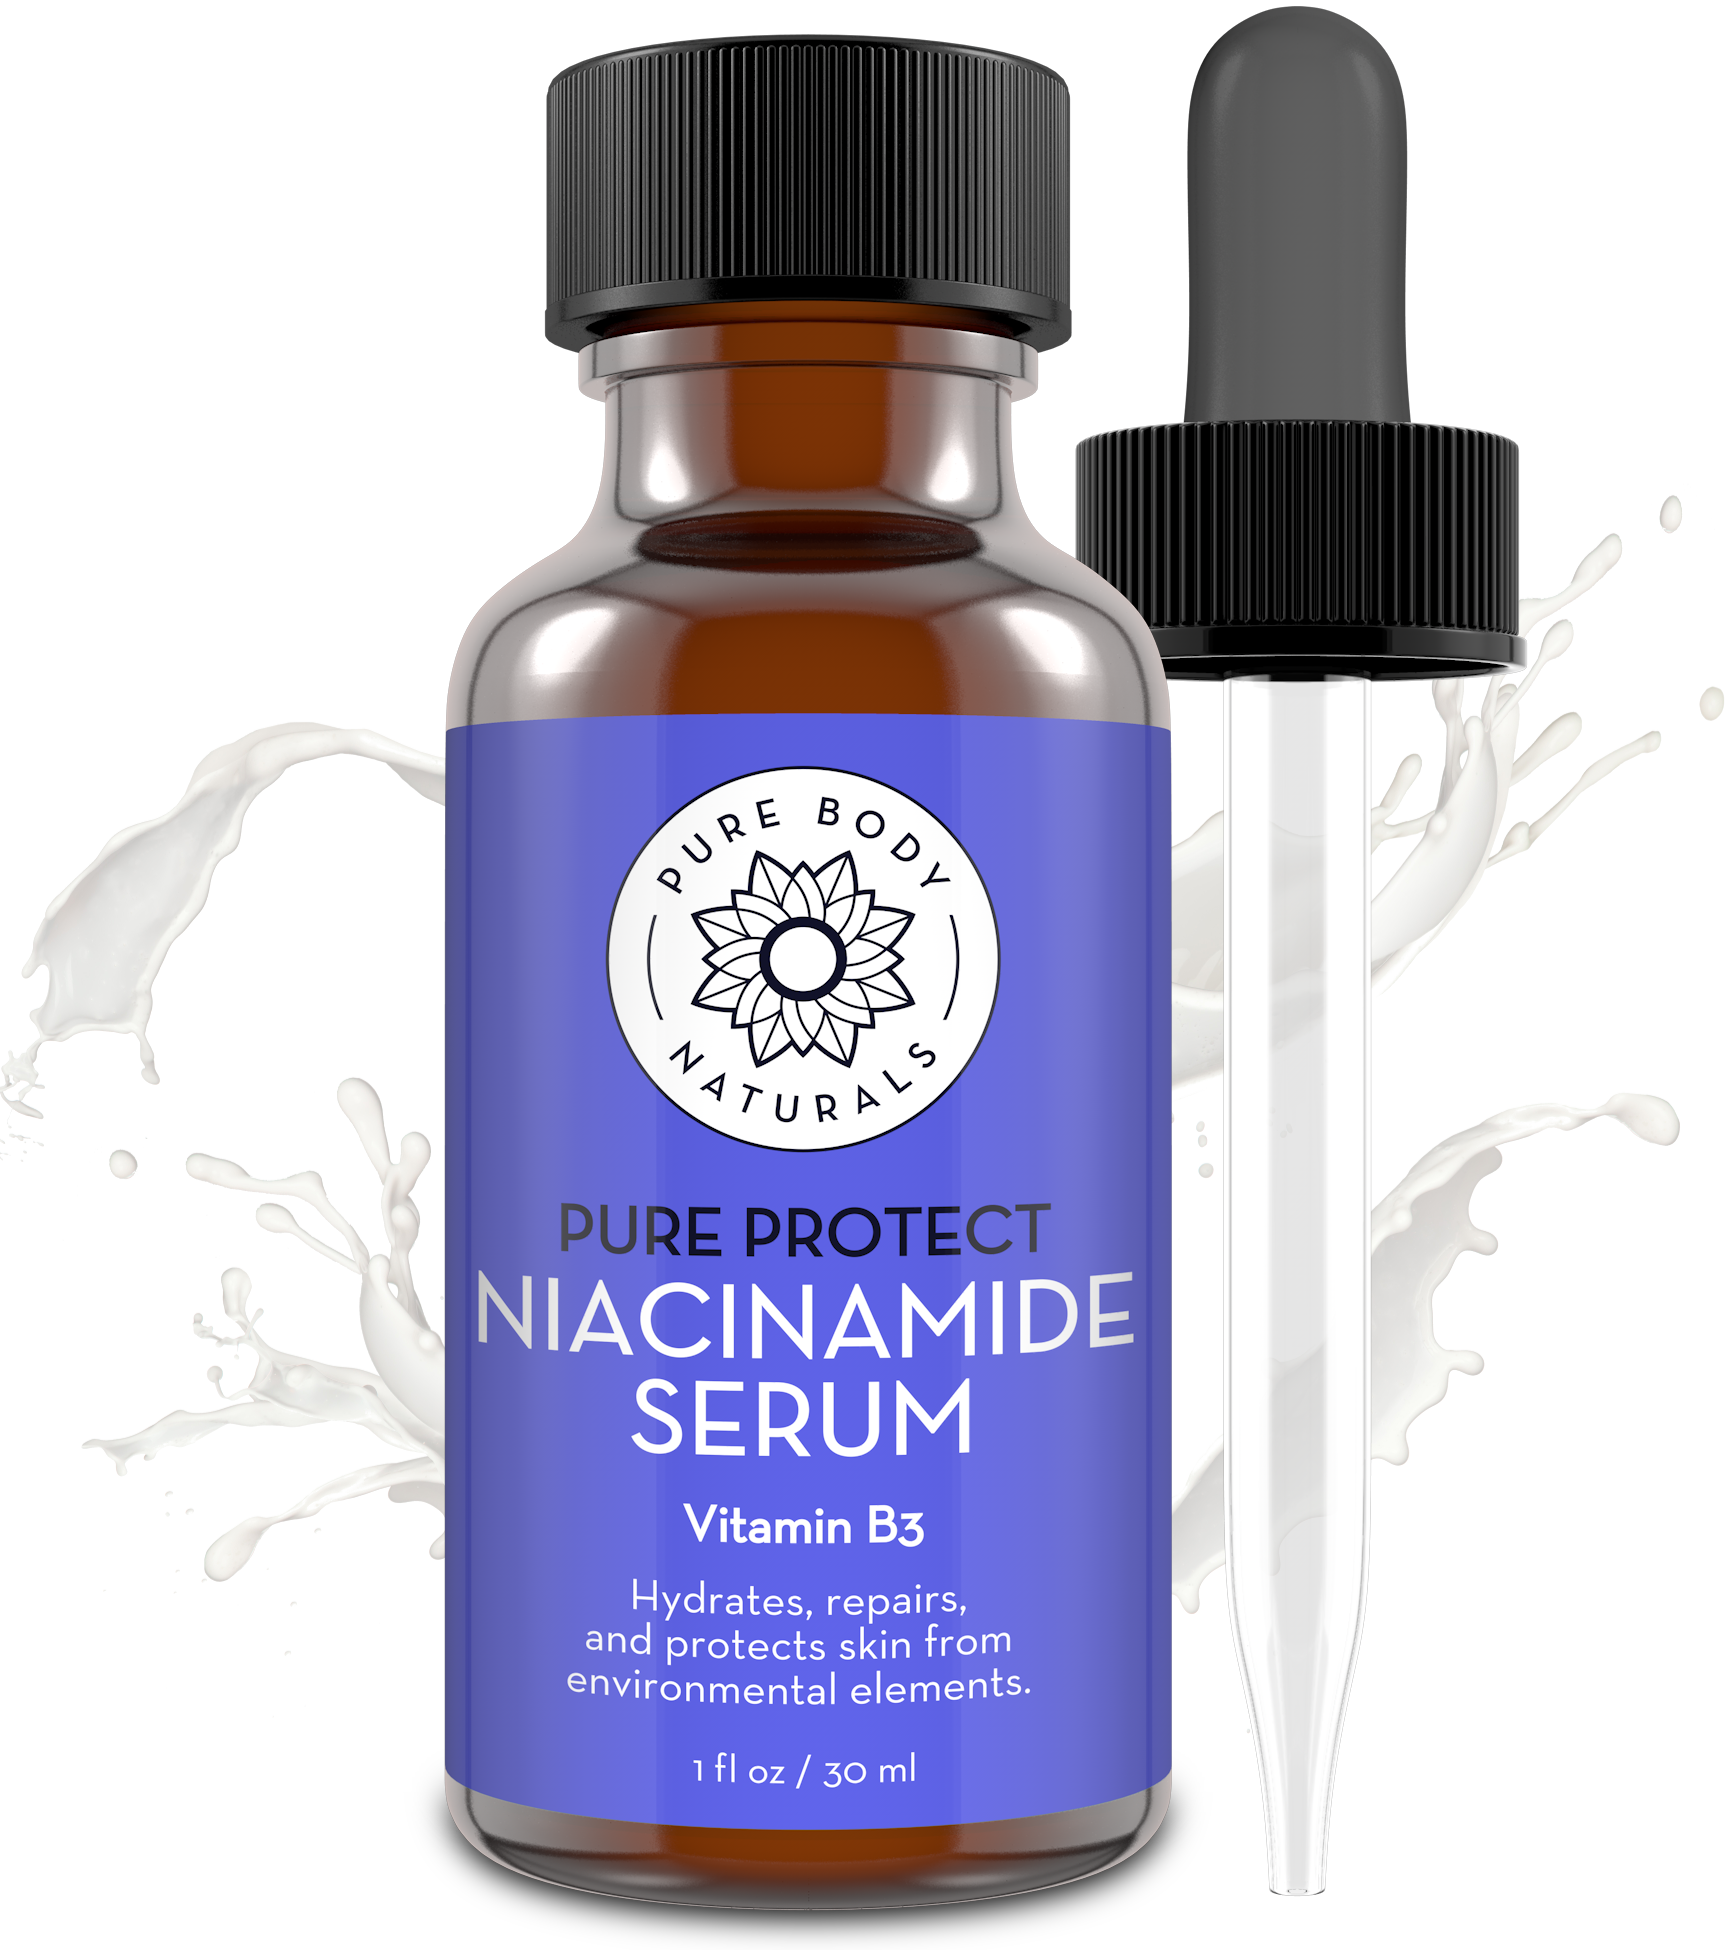 Serum Niacinamide dari The Ordinary